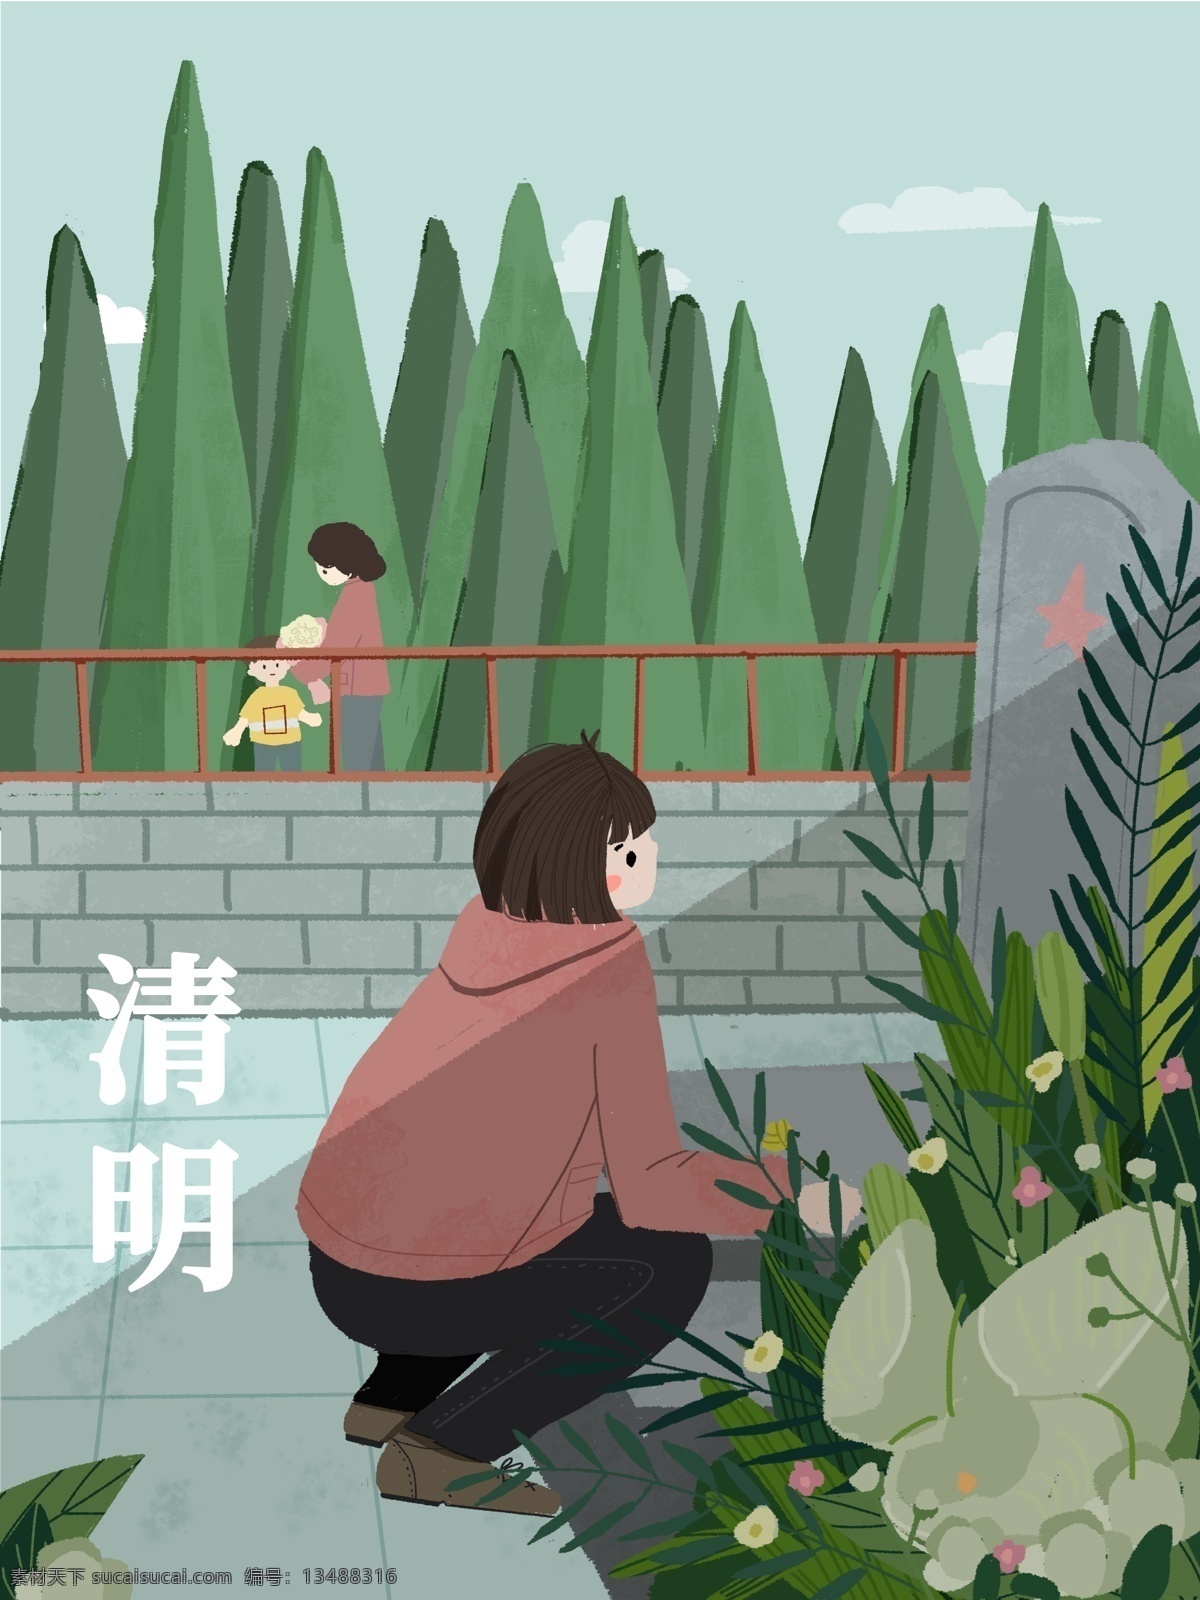 清明节 扫墓 手绘 插画 清明 传统节日 节日 祭祖 春祭 植物